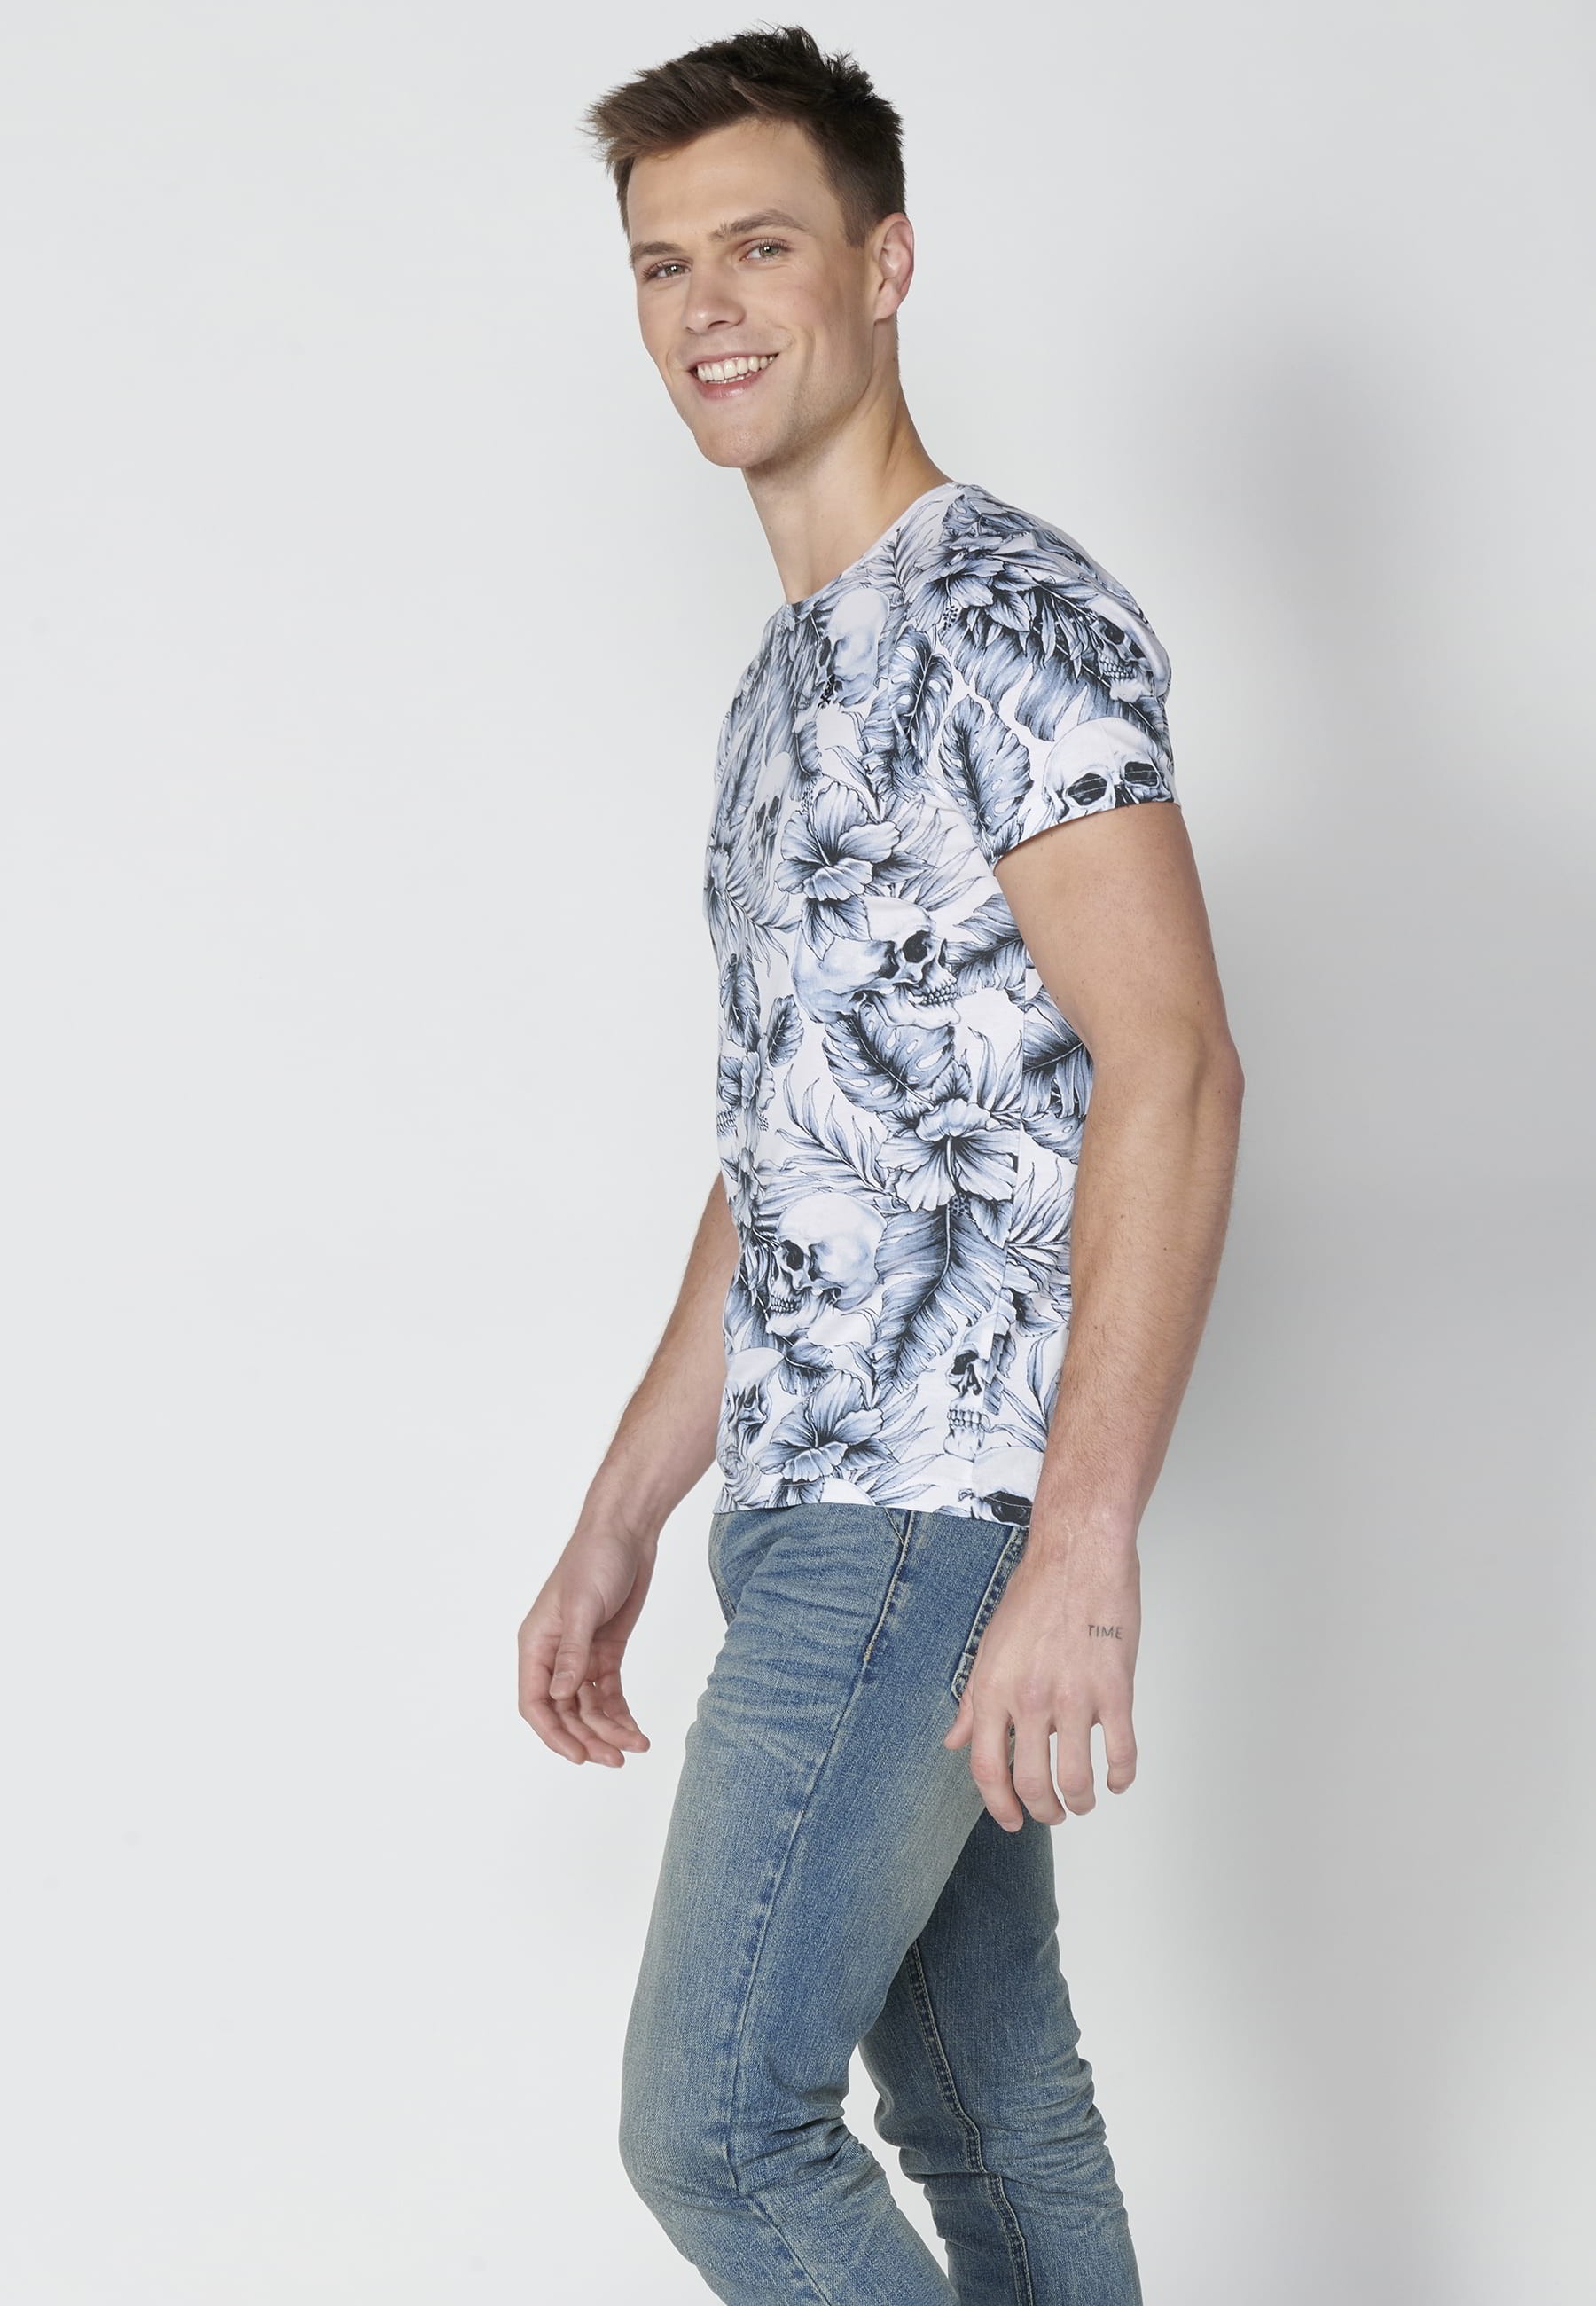 T-shirt Homme Blanc Imprimé Tropical En Coton À Manches Courtes